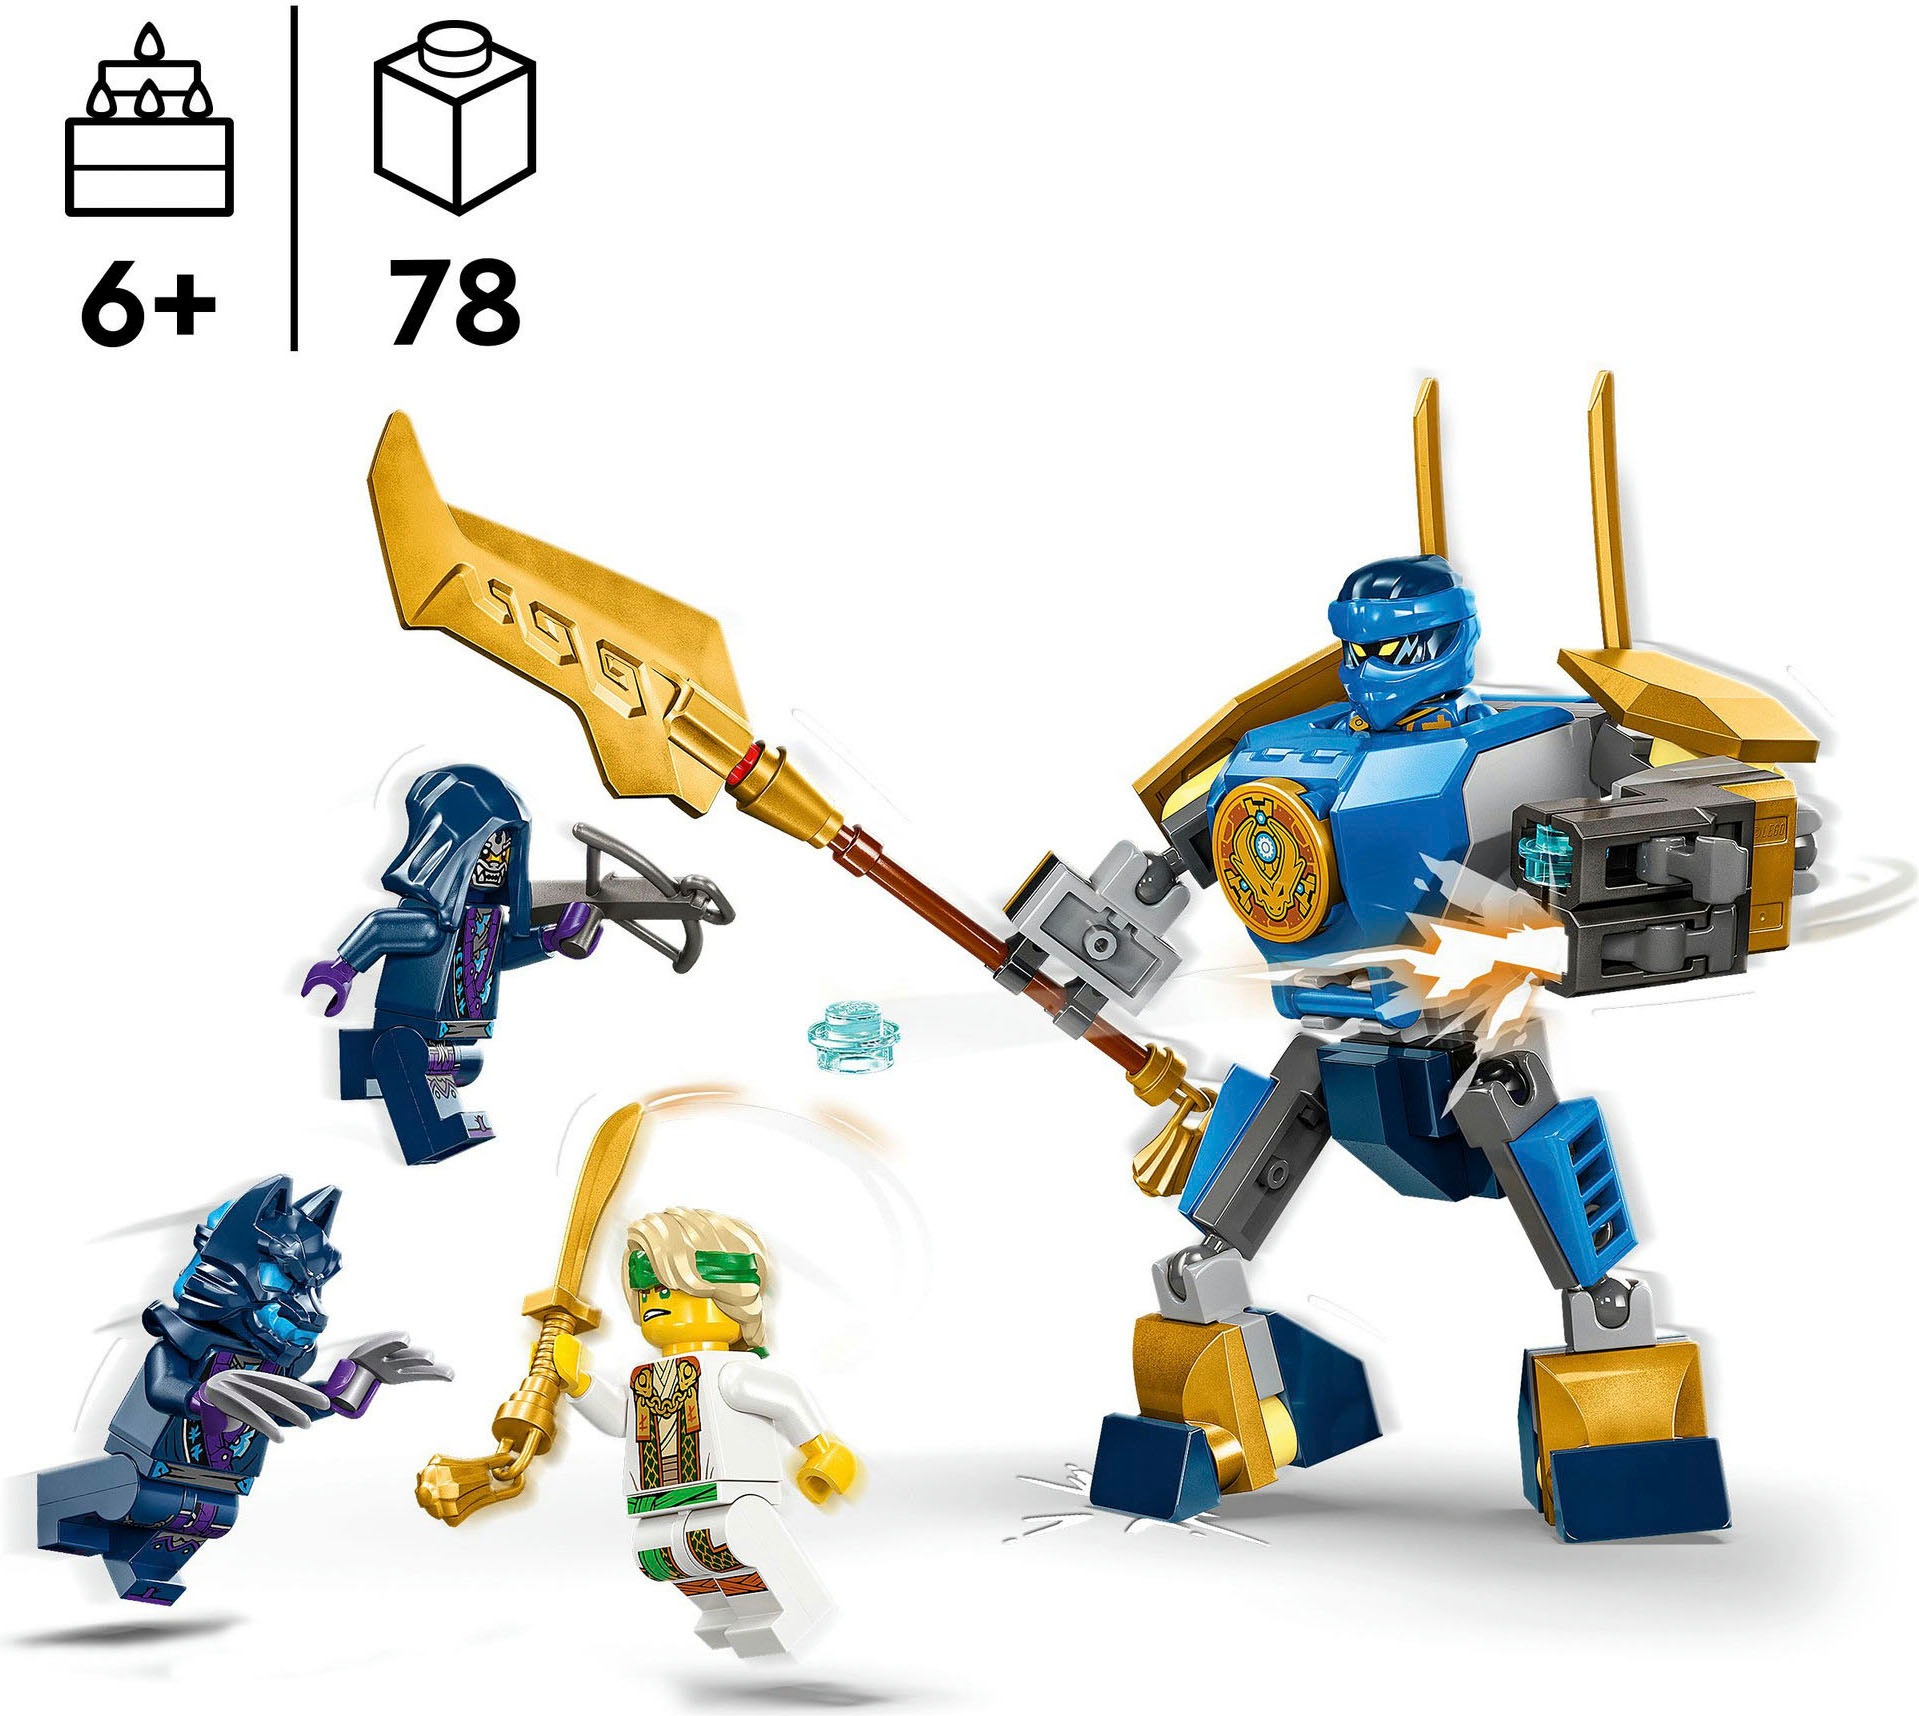 LEGO® Konstruktionsspielsteine »Jays Battle Mech (71805), LEGO Ninjago«, (78 St.), Made in Europe